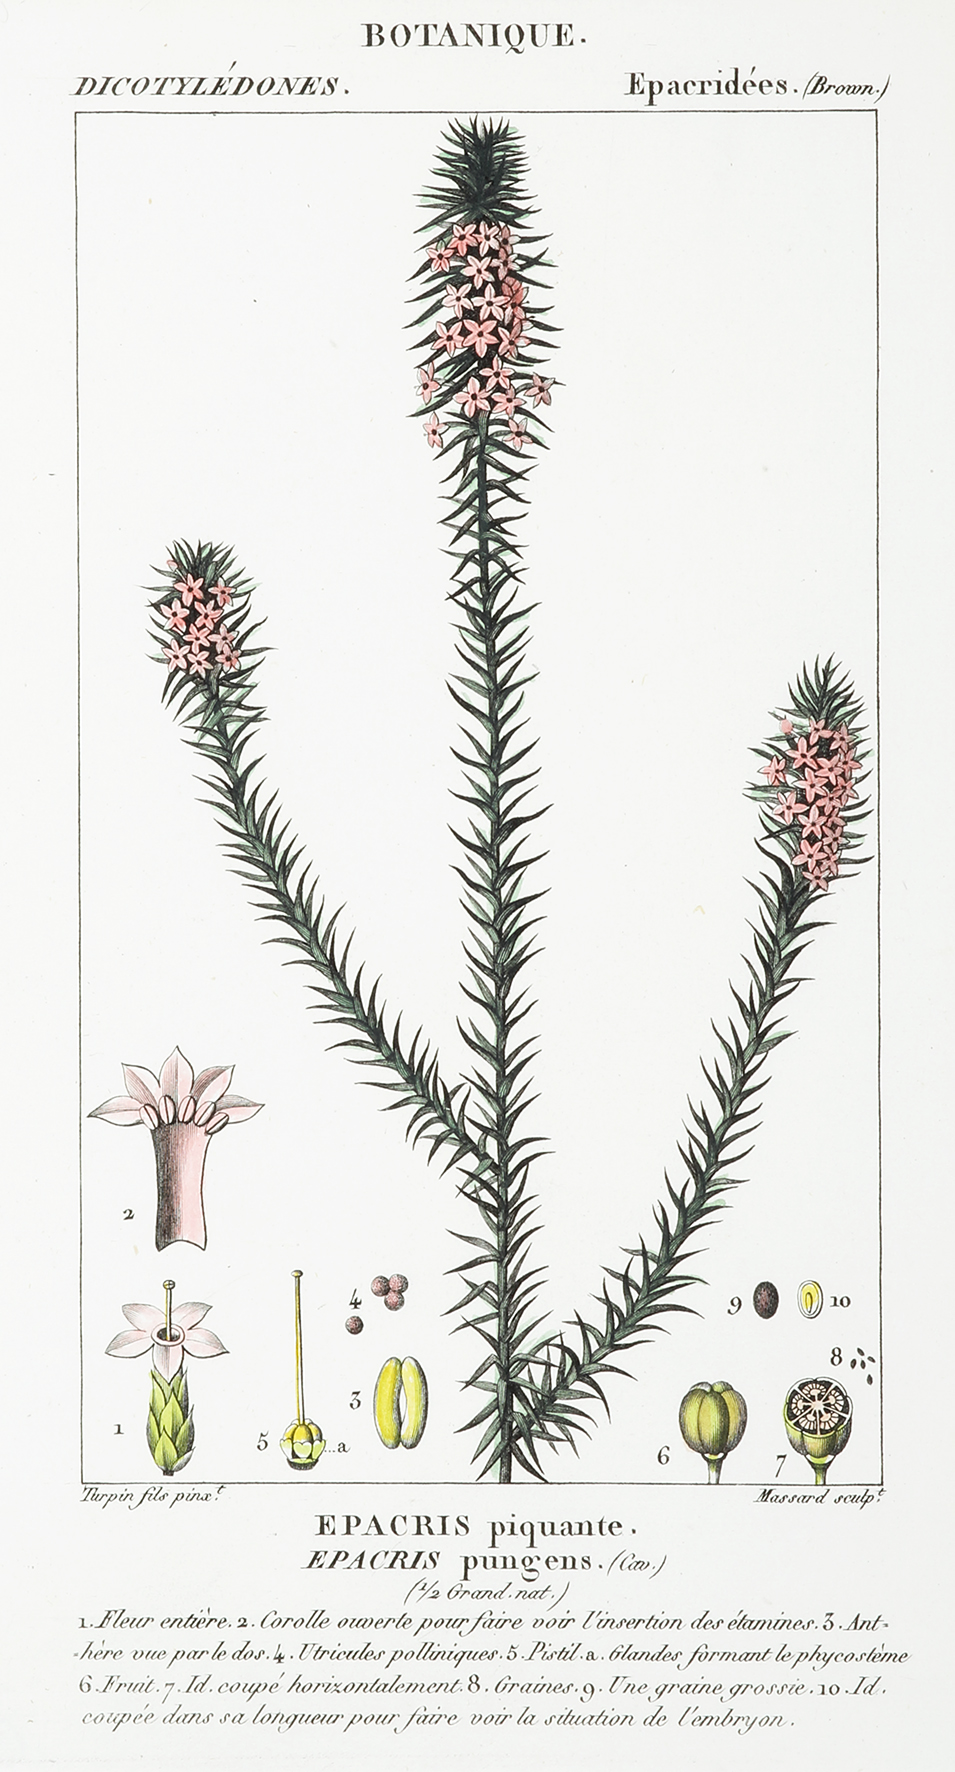 Epacris piquante. Epacris pungens. - Antique Print from 1828